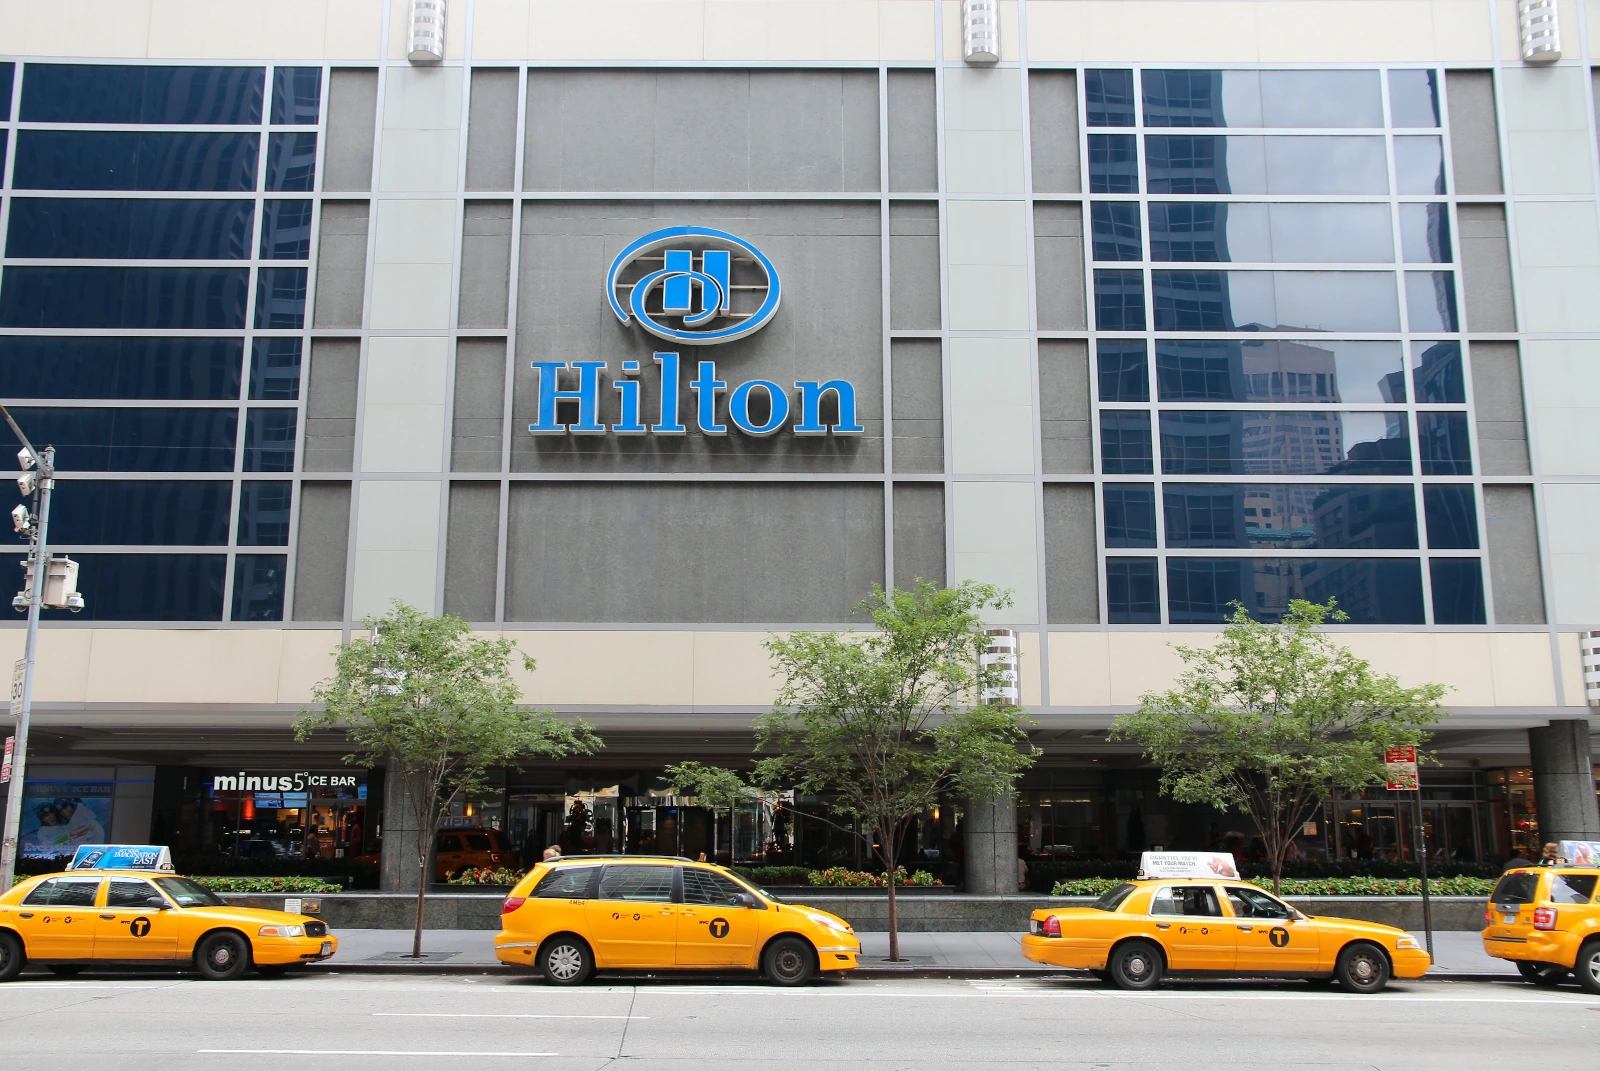 Taxis parken vor Hilton Hotel in New York